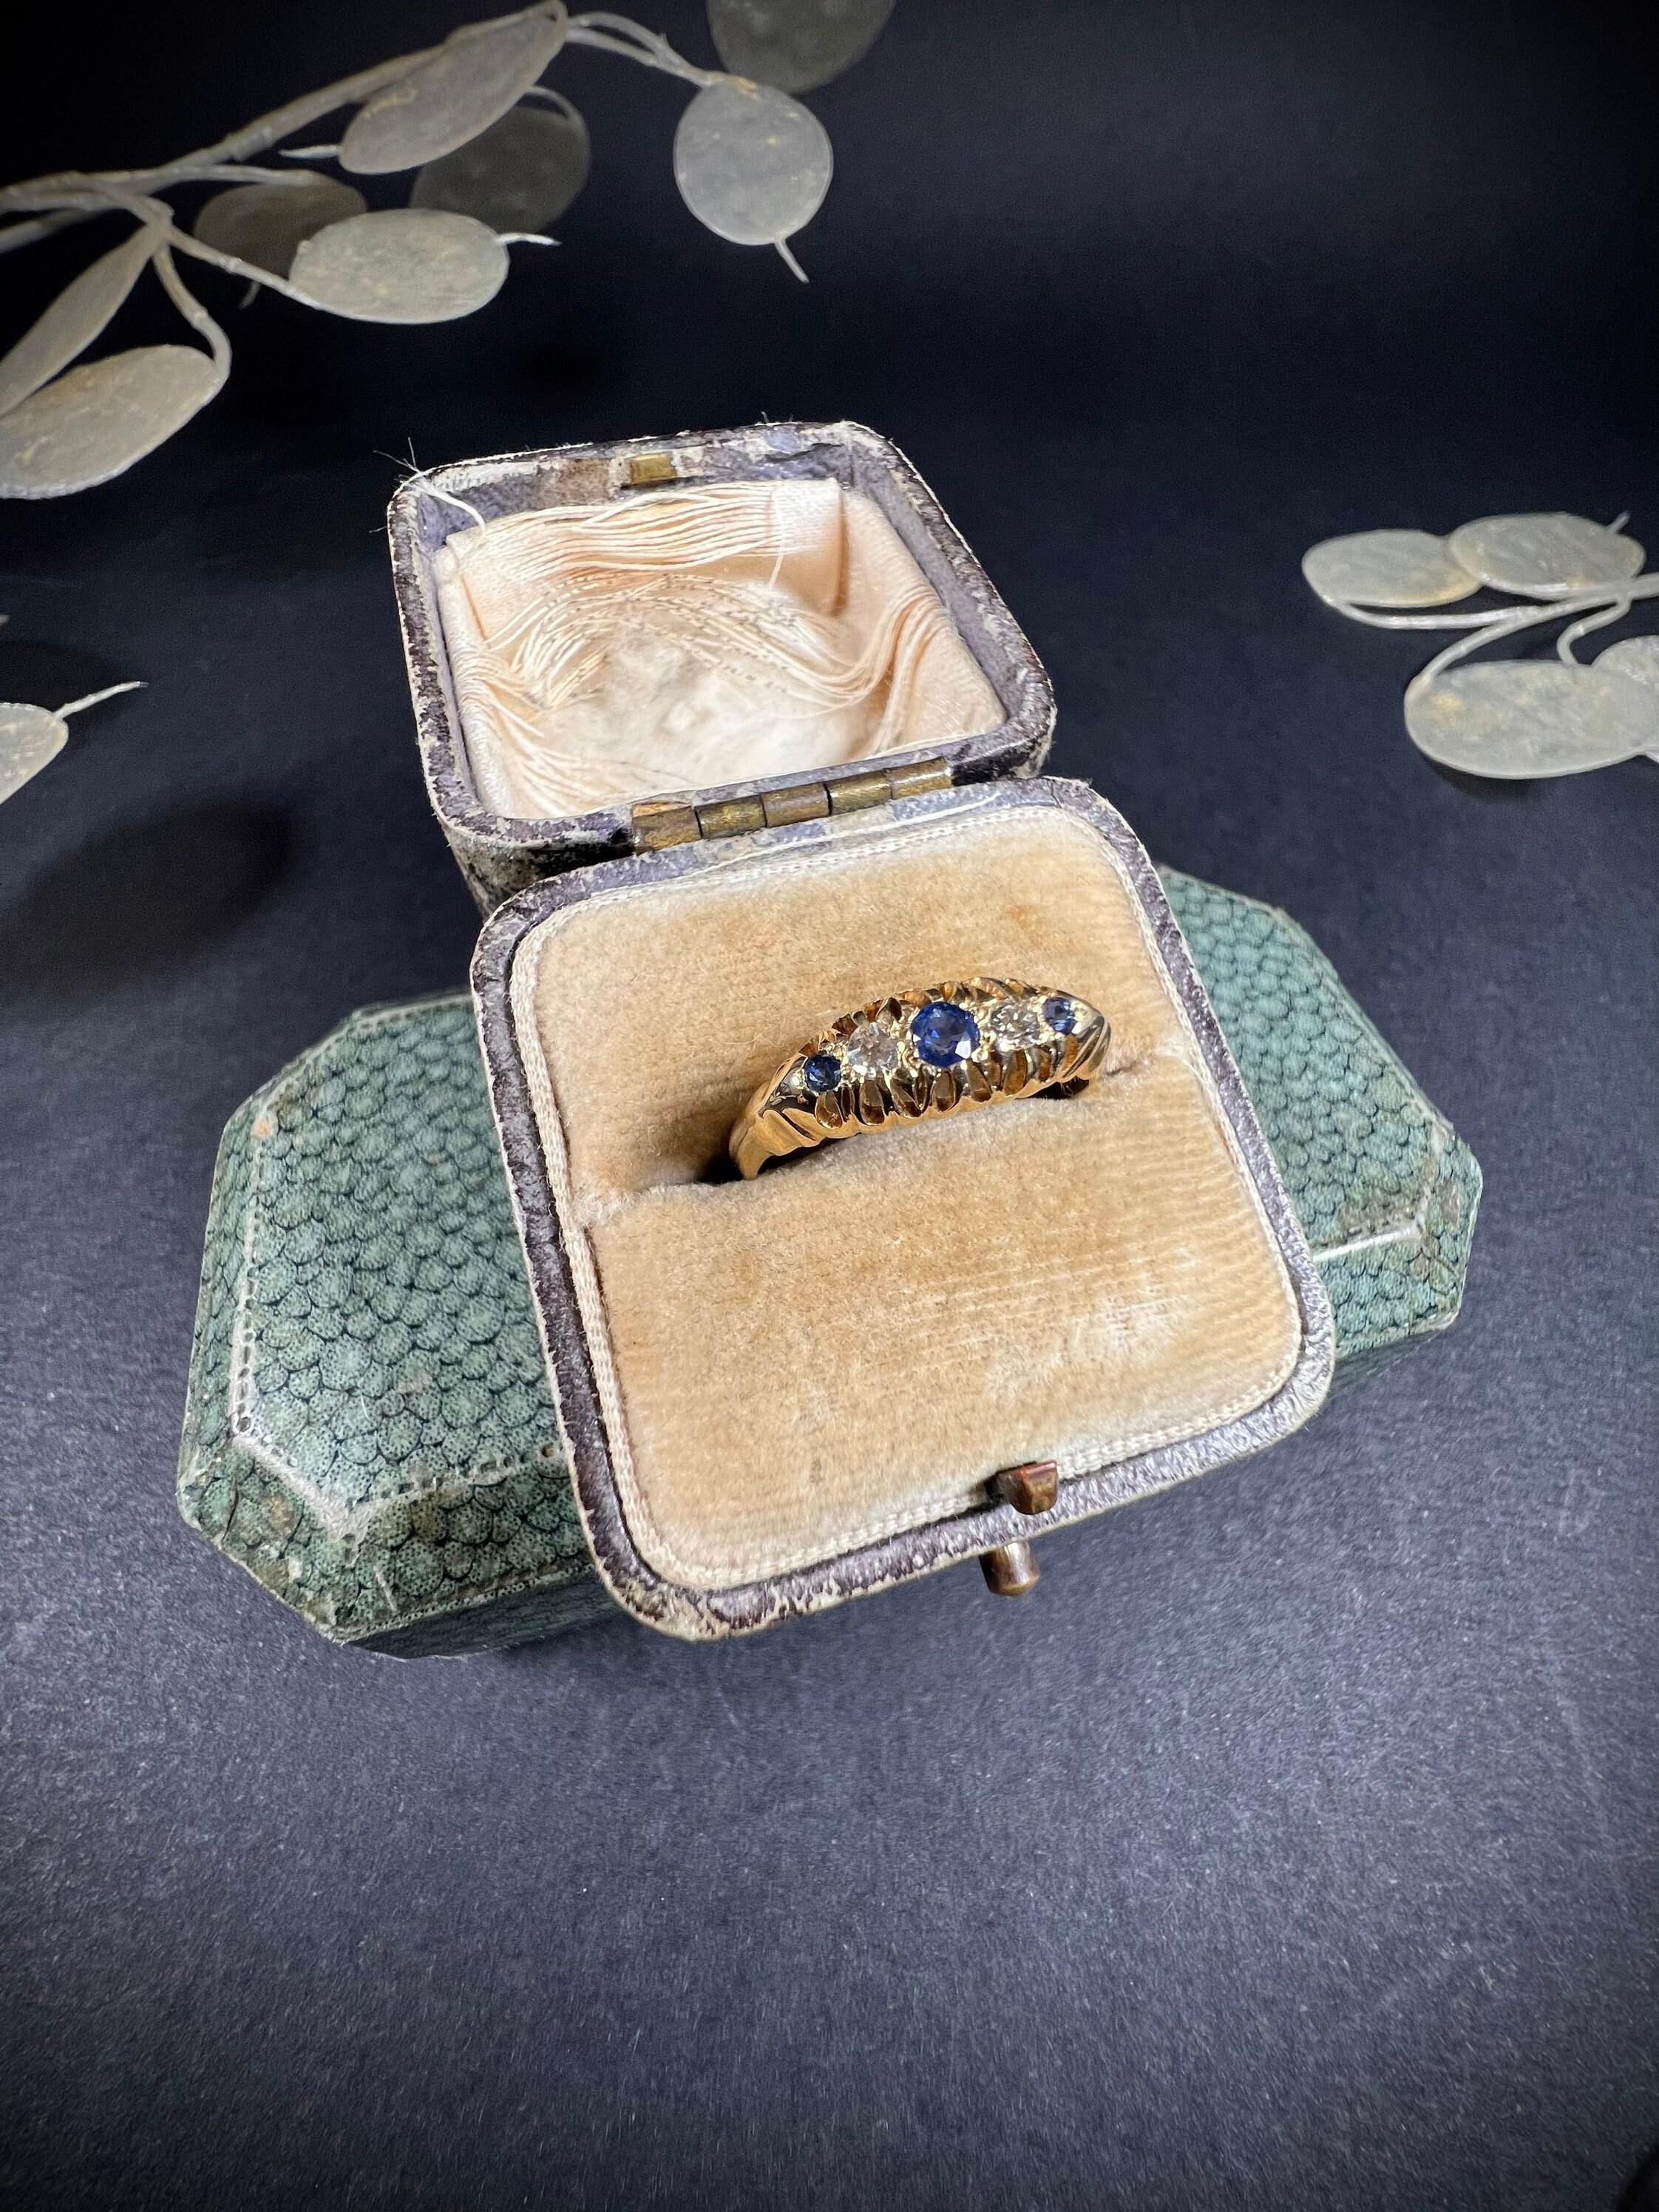 Antiker Zigeuner Ring 

18-Karat-Gold 

Gepunzt: Birmingham 1920

Schöner, kleiner antiker Zigeunerring. Abwechselnd mit natürlichen Saphiren und Diamanten besetzt. Montiert in schönem 18-karätigem Gold, mit voller Punzierung. 

Die Höhe des Rings